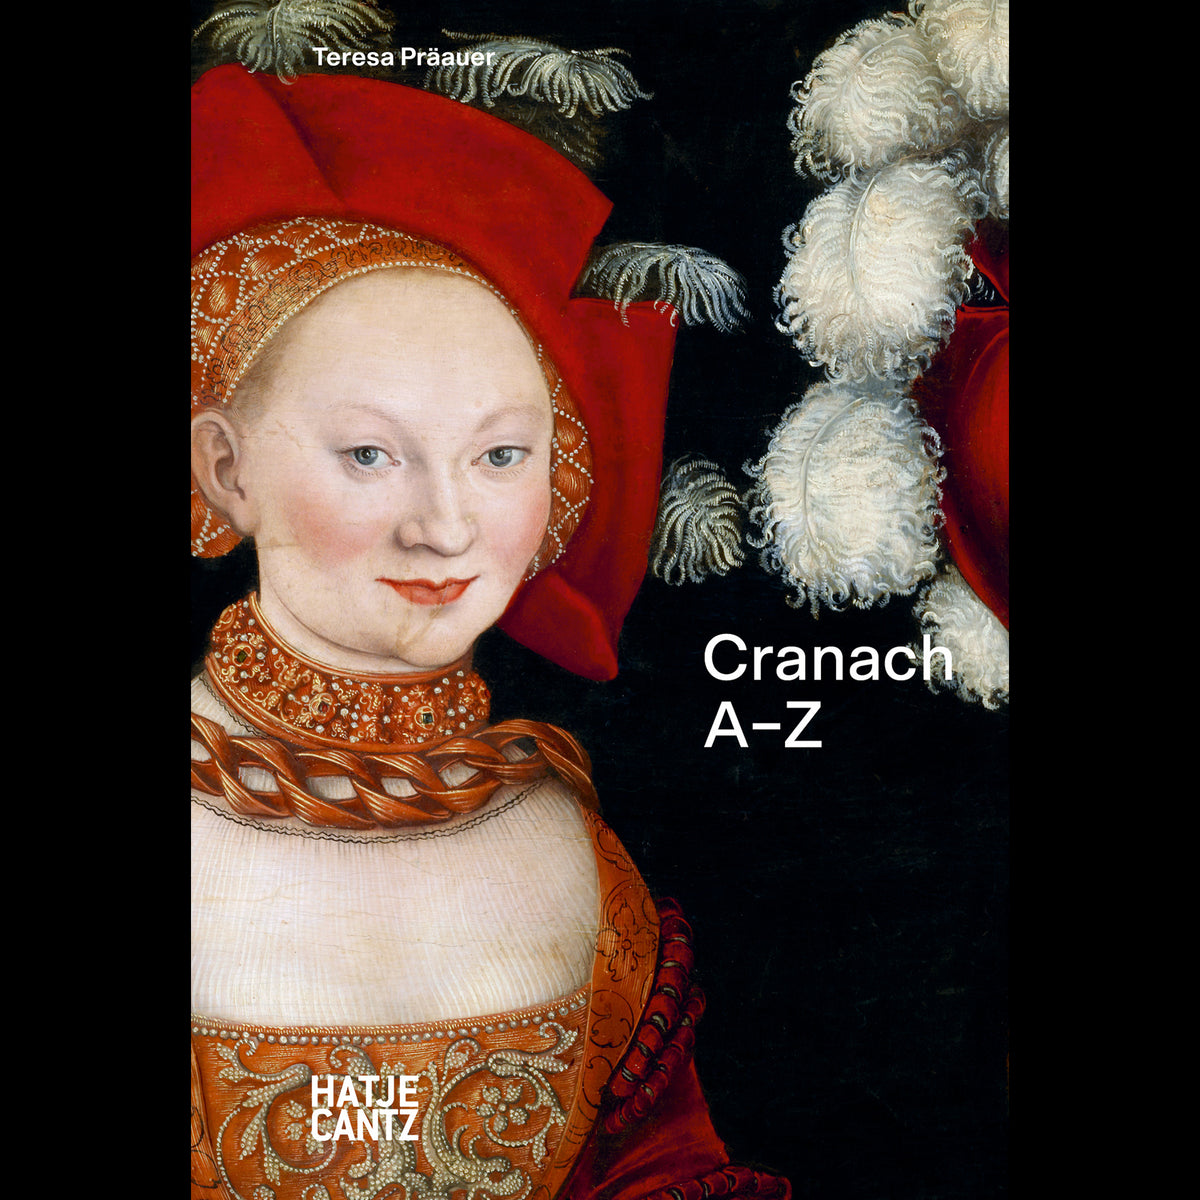 Coverbild Lucas Cranach